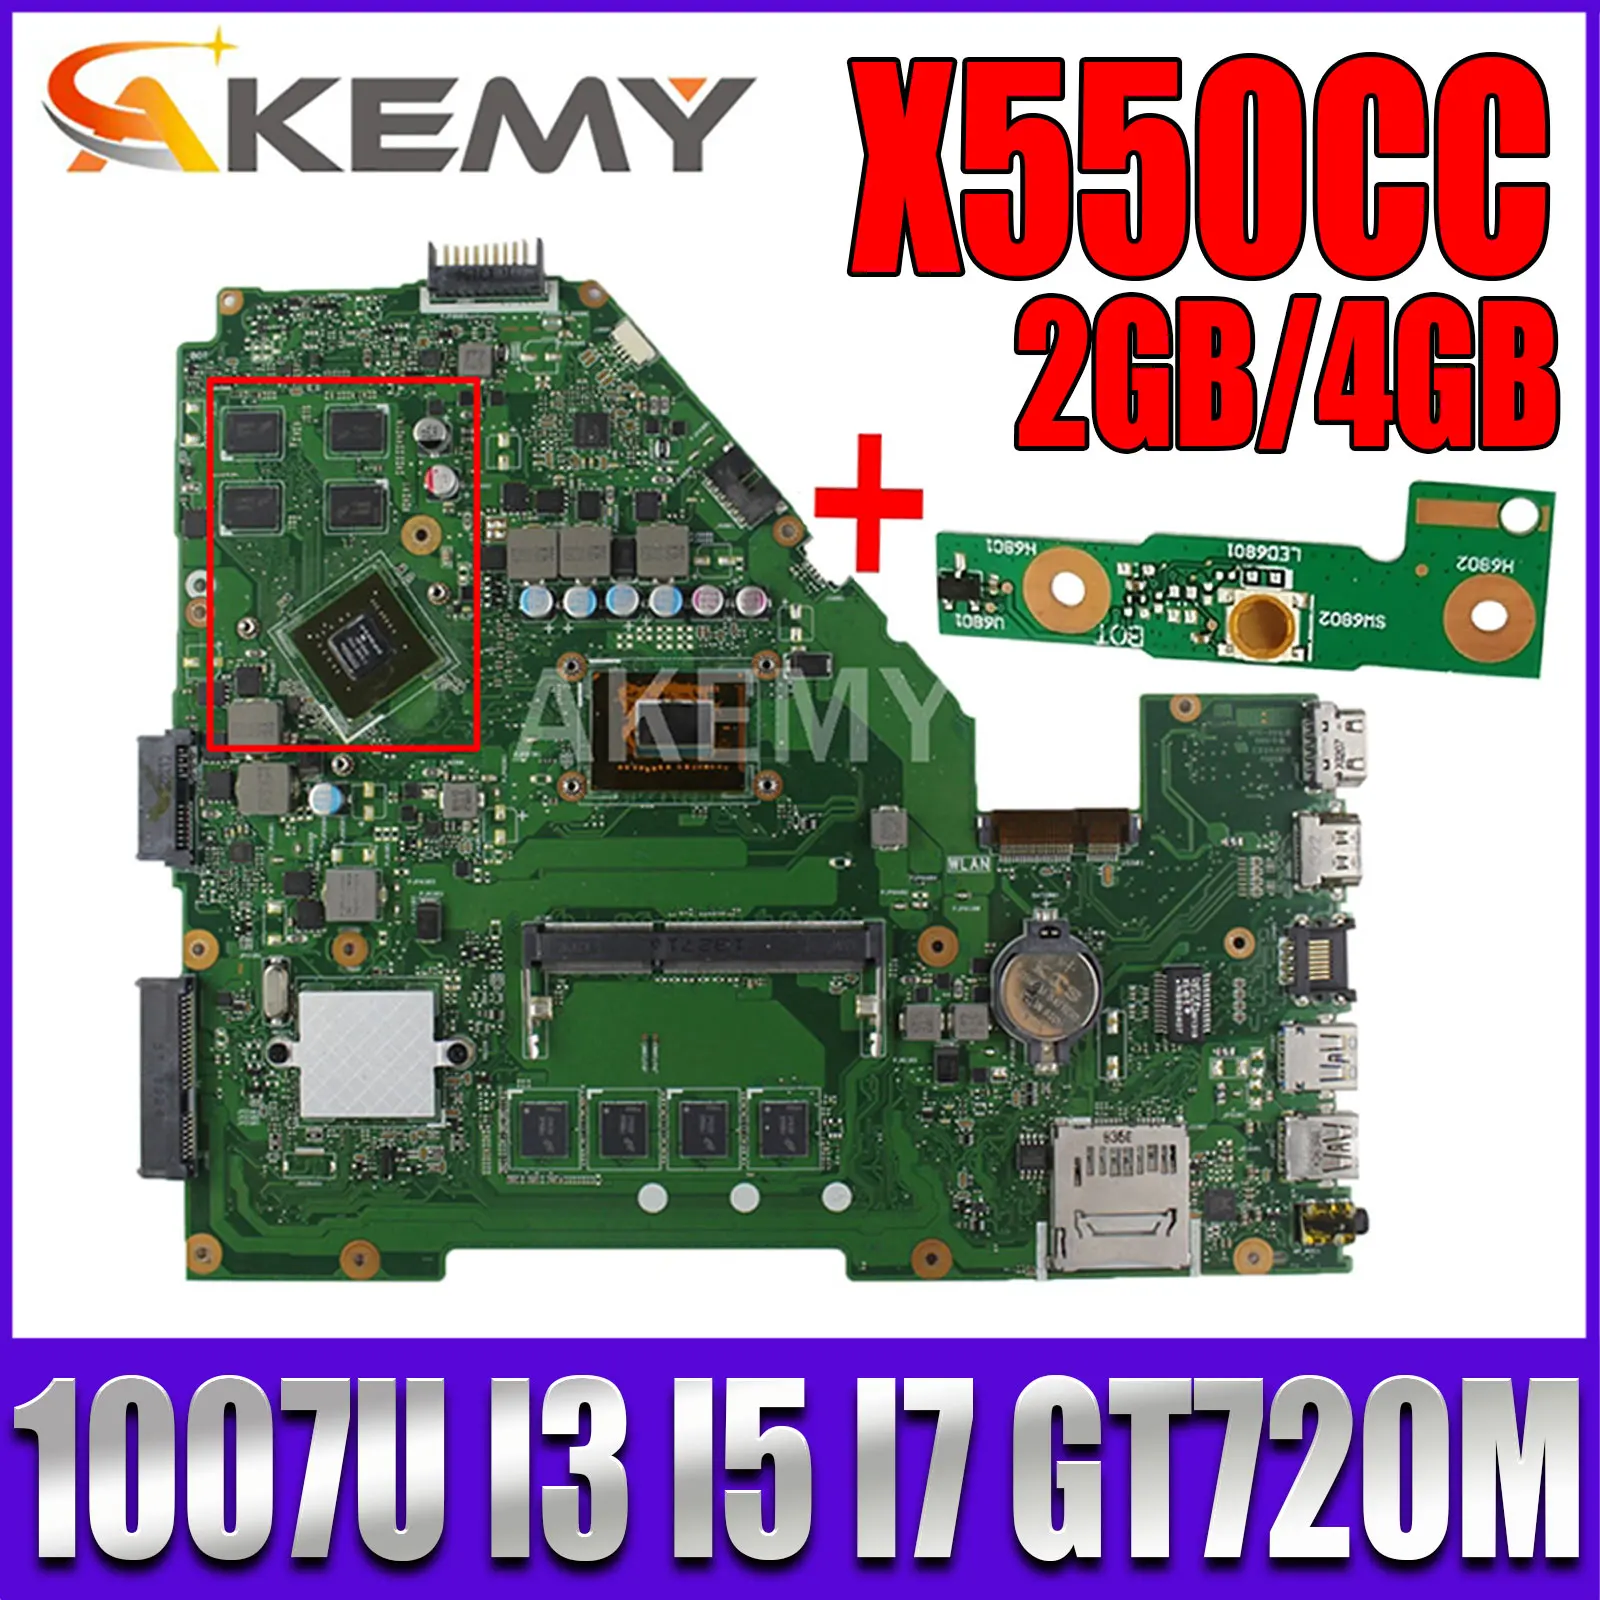 

X550CC Motherboard 2GB 4GB RAM 1007U I3 I5 I7 CPU GT720M GPU for ASUS Y581C X552C X550C X550CL A550C K550C Laotop Mainboard